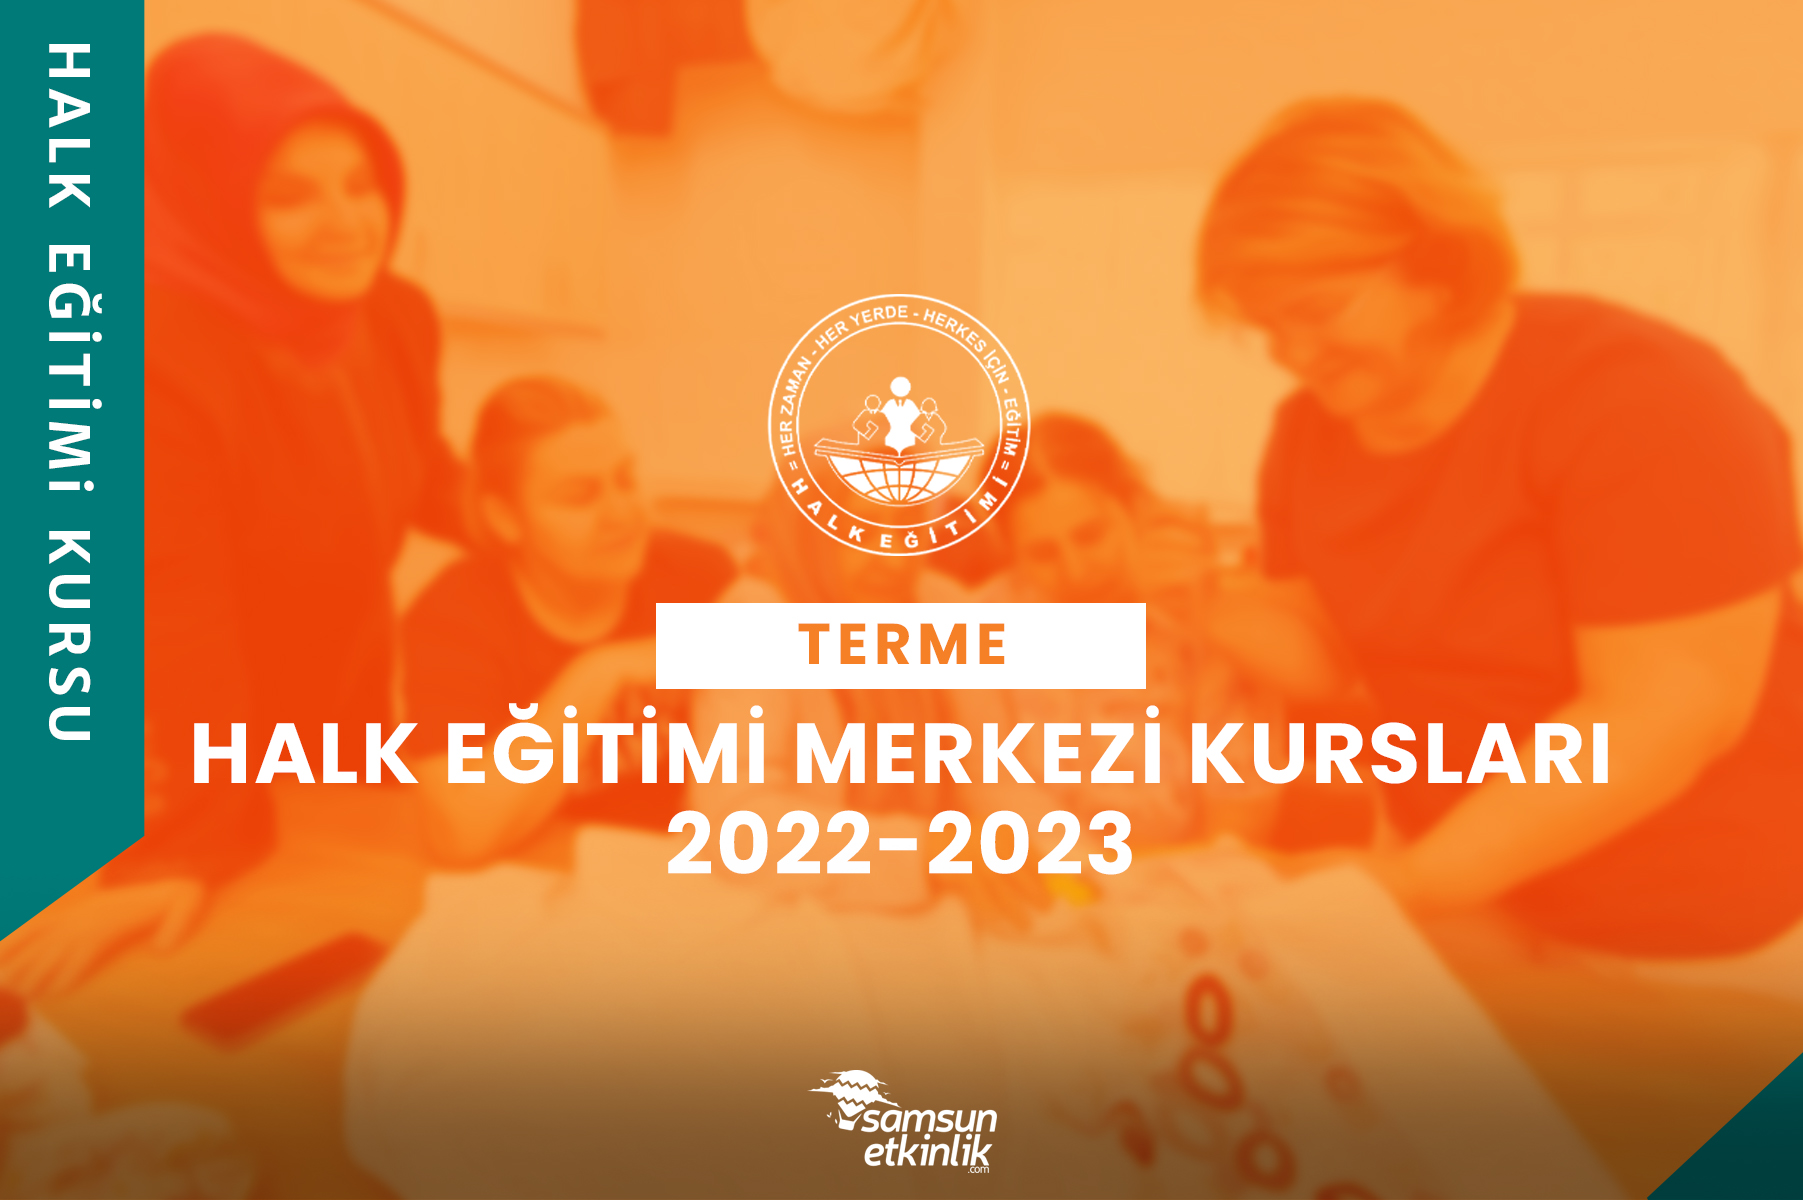 Samsun Terme Halk Eğitimi Merkezi Kursları 2022-2023